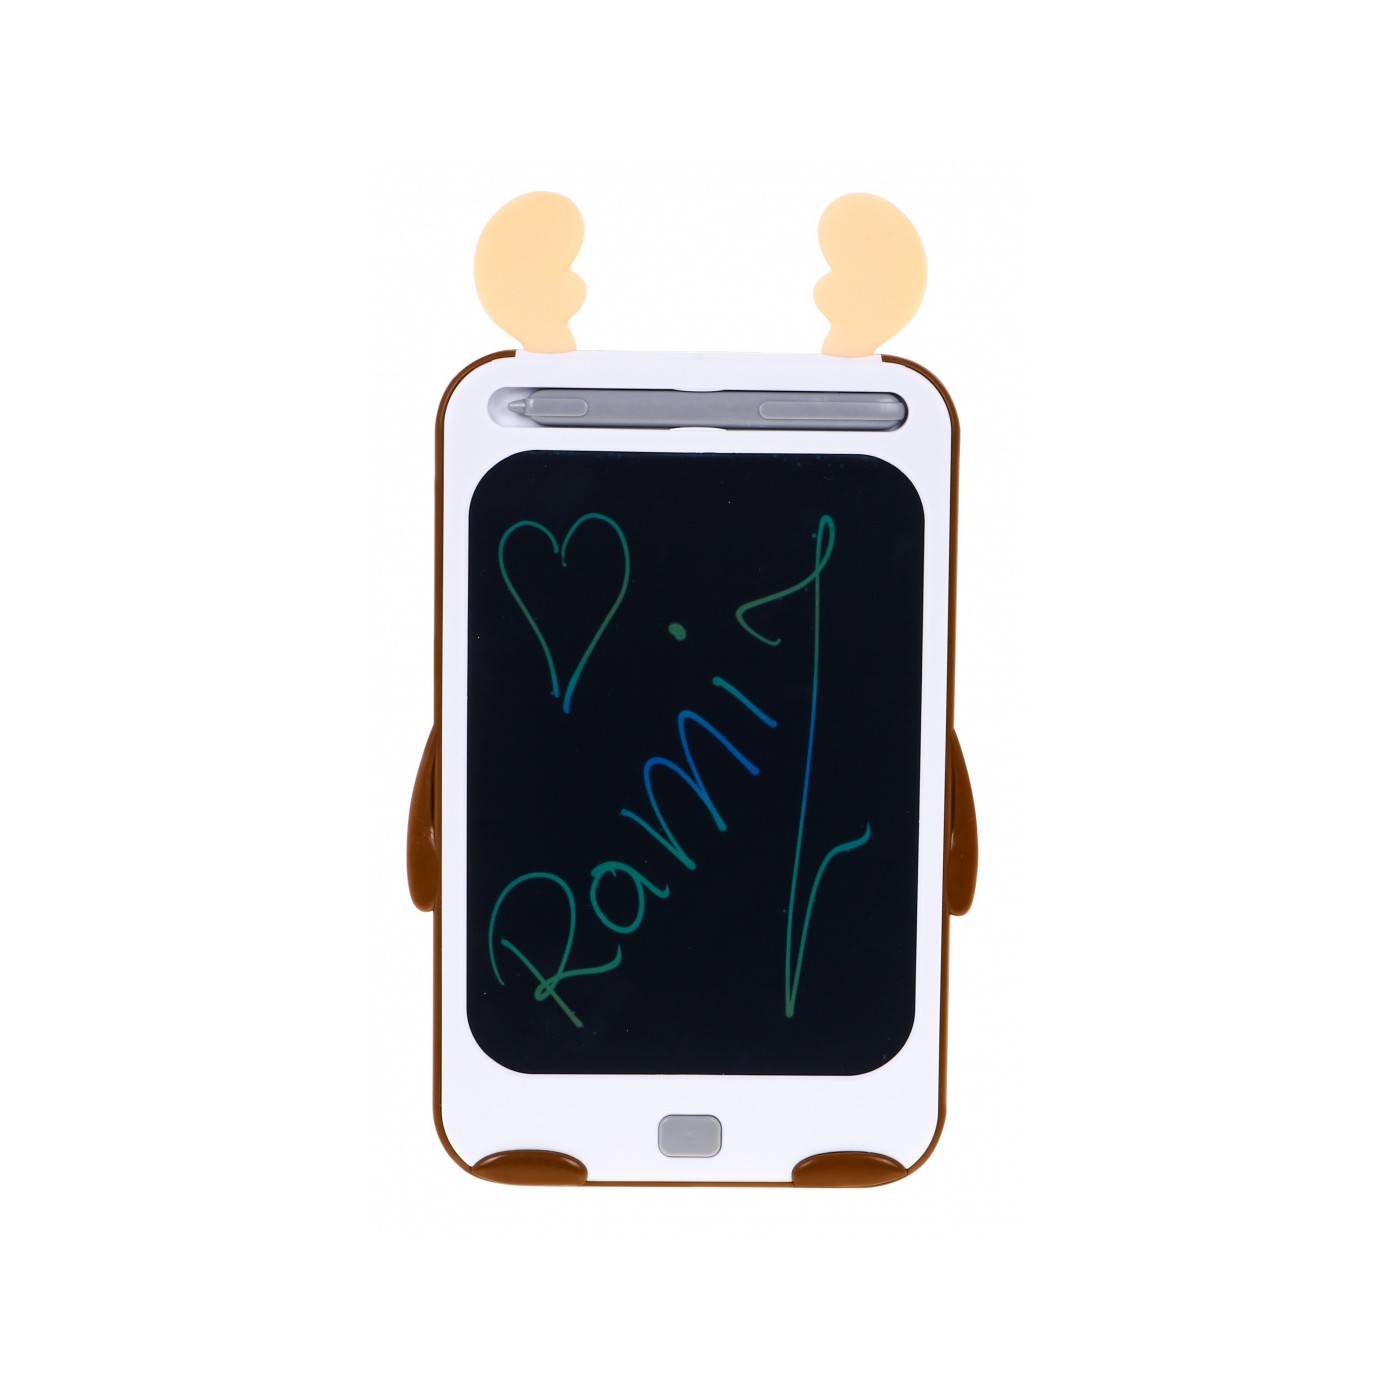 Renifer Tablet do rysowania dla dzieci 3+ Ekran + Rysik + Przycisk do zmazywania